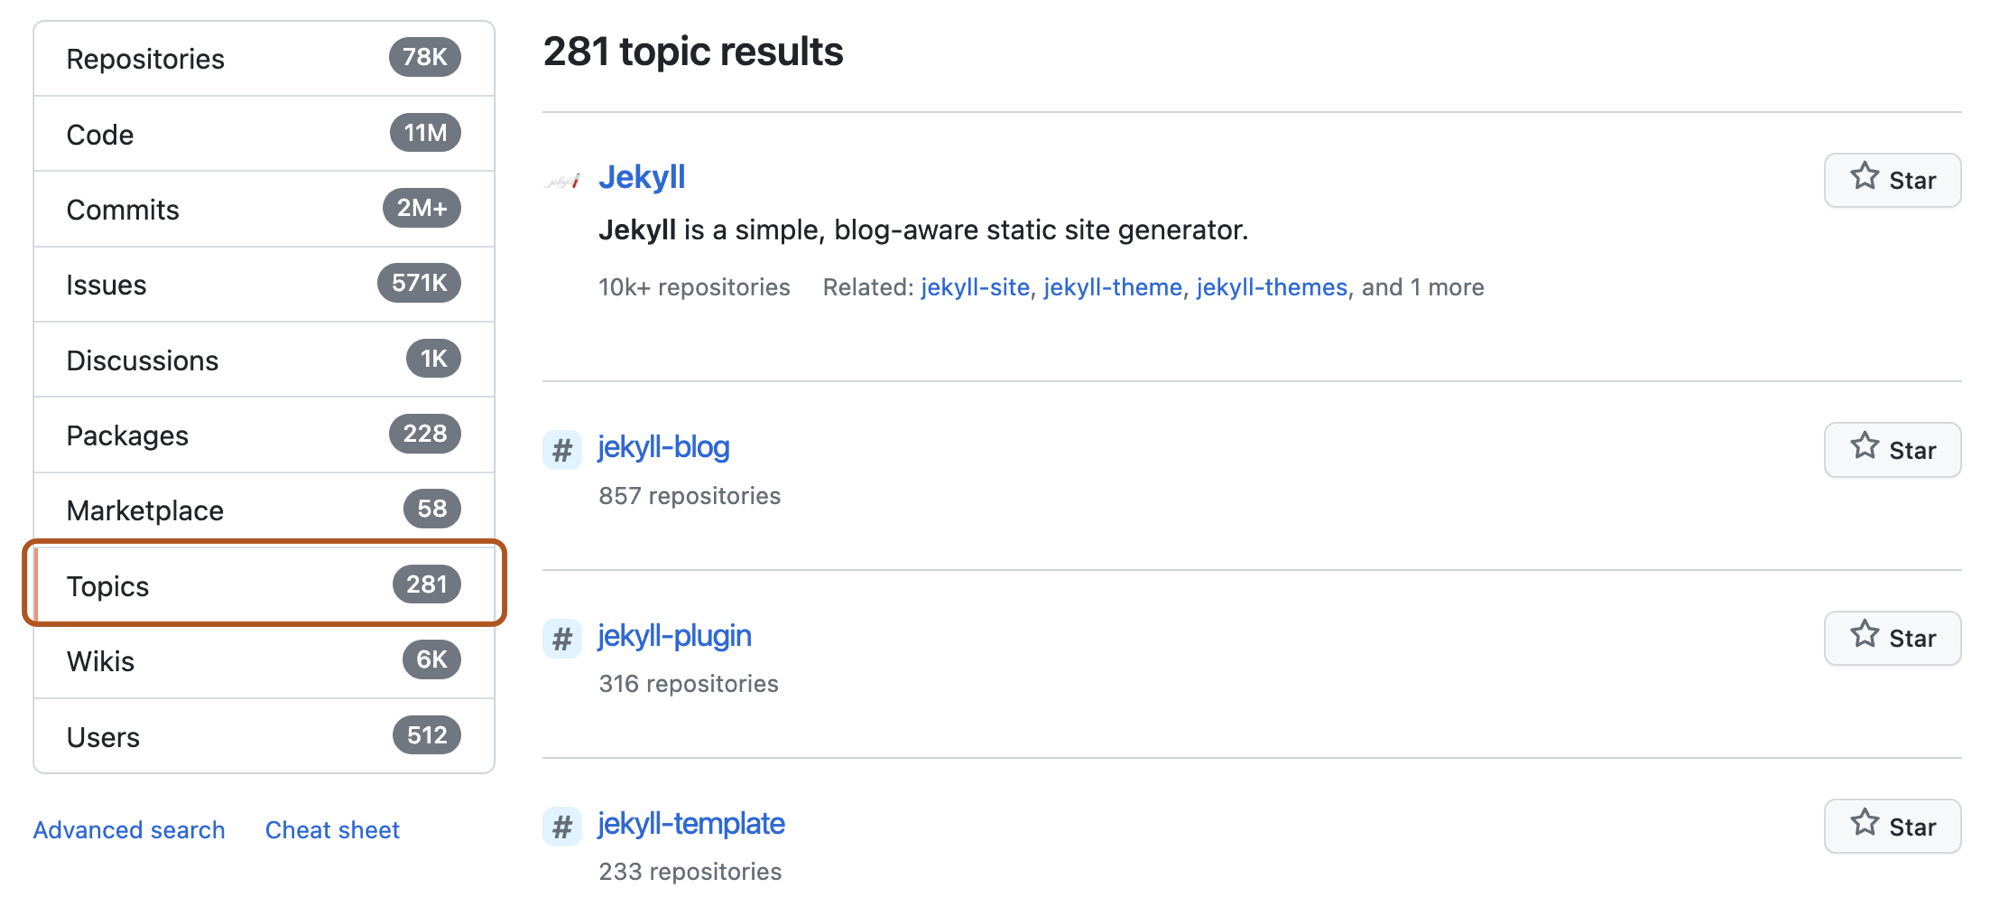 Снимок экрана: страница результатов поиска репозитория для термина "jekyll" с параметром "Темы" в меню слева, описанном в темно-оранжевый.